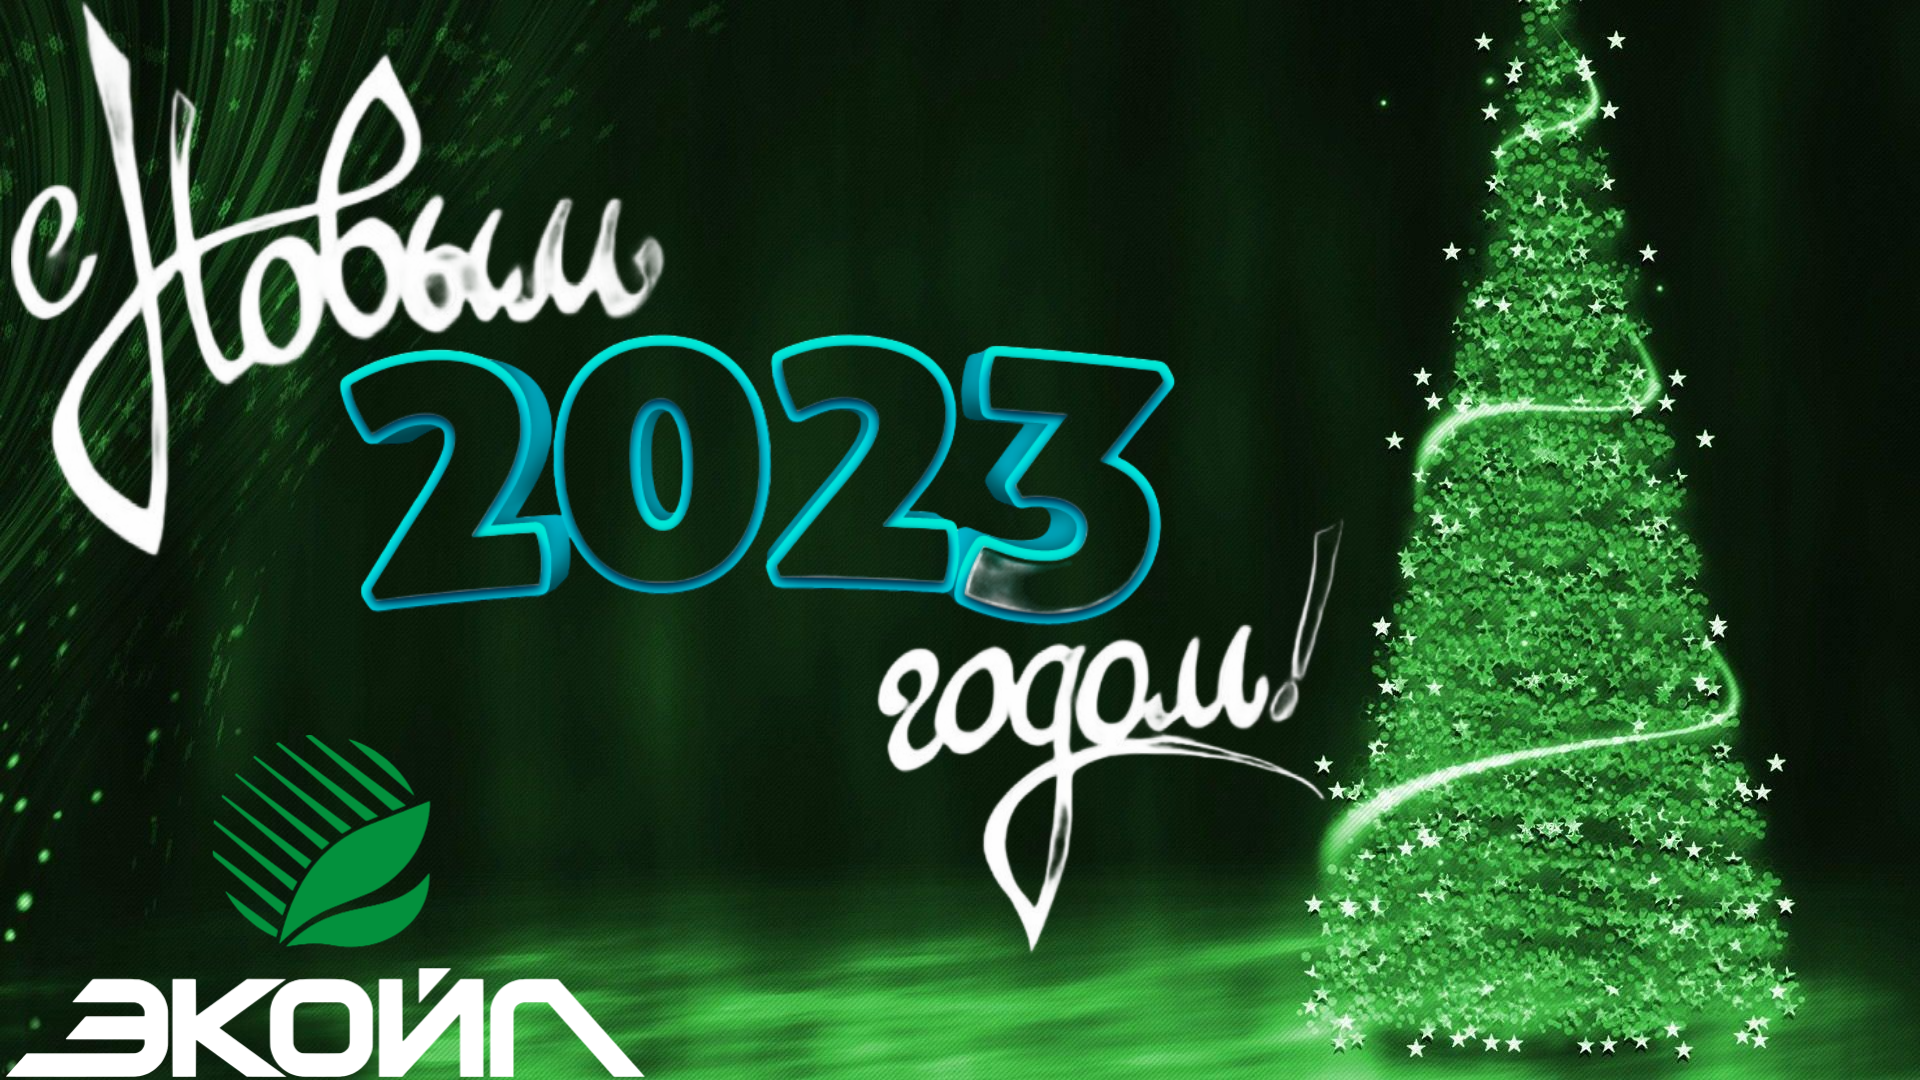 ООО "ЭКОЙЛ" поздравляет с Новым годом 2023